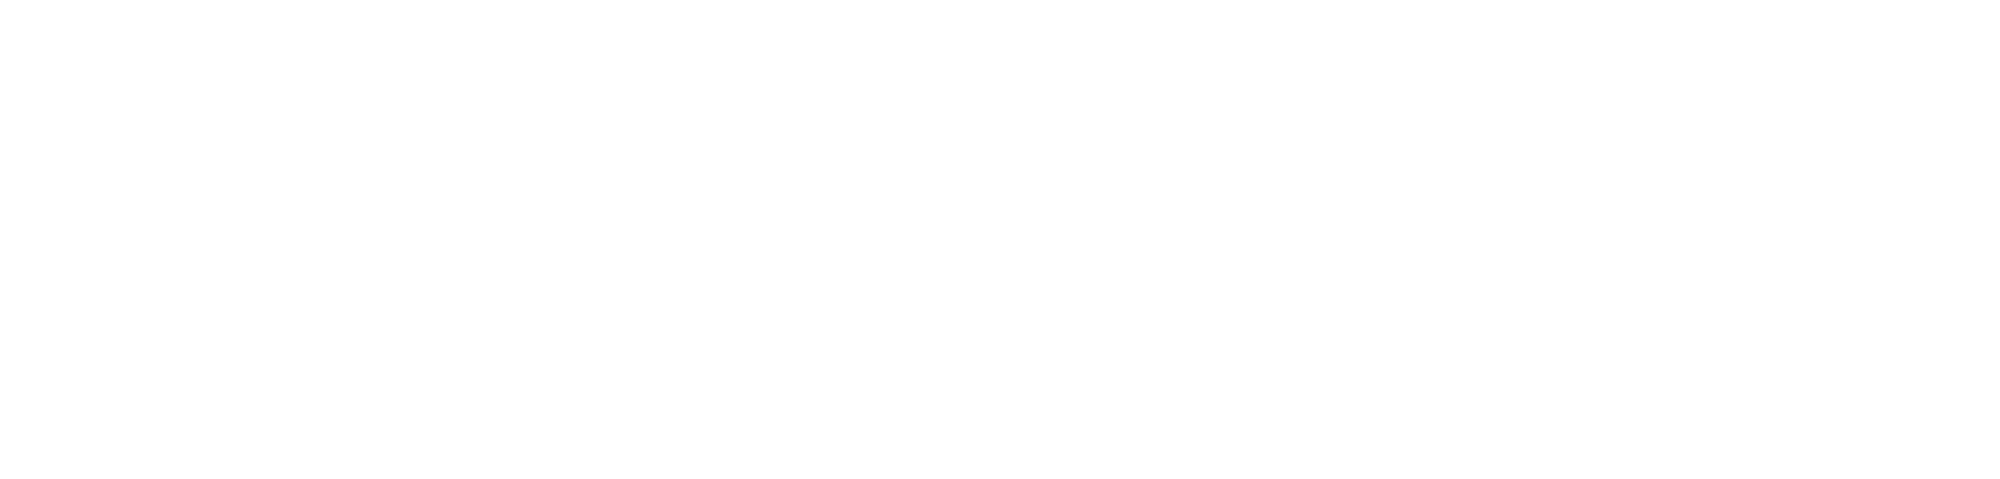 Desert Diamond Sportsbook White logo